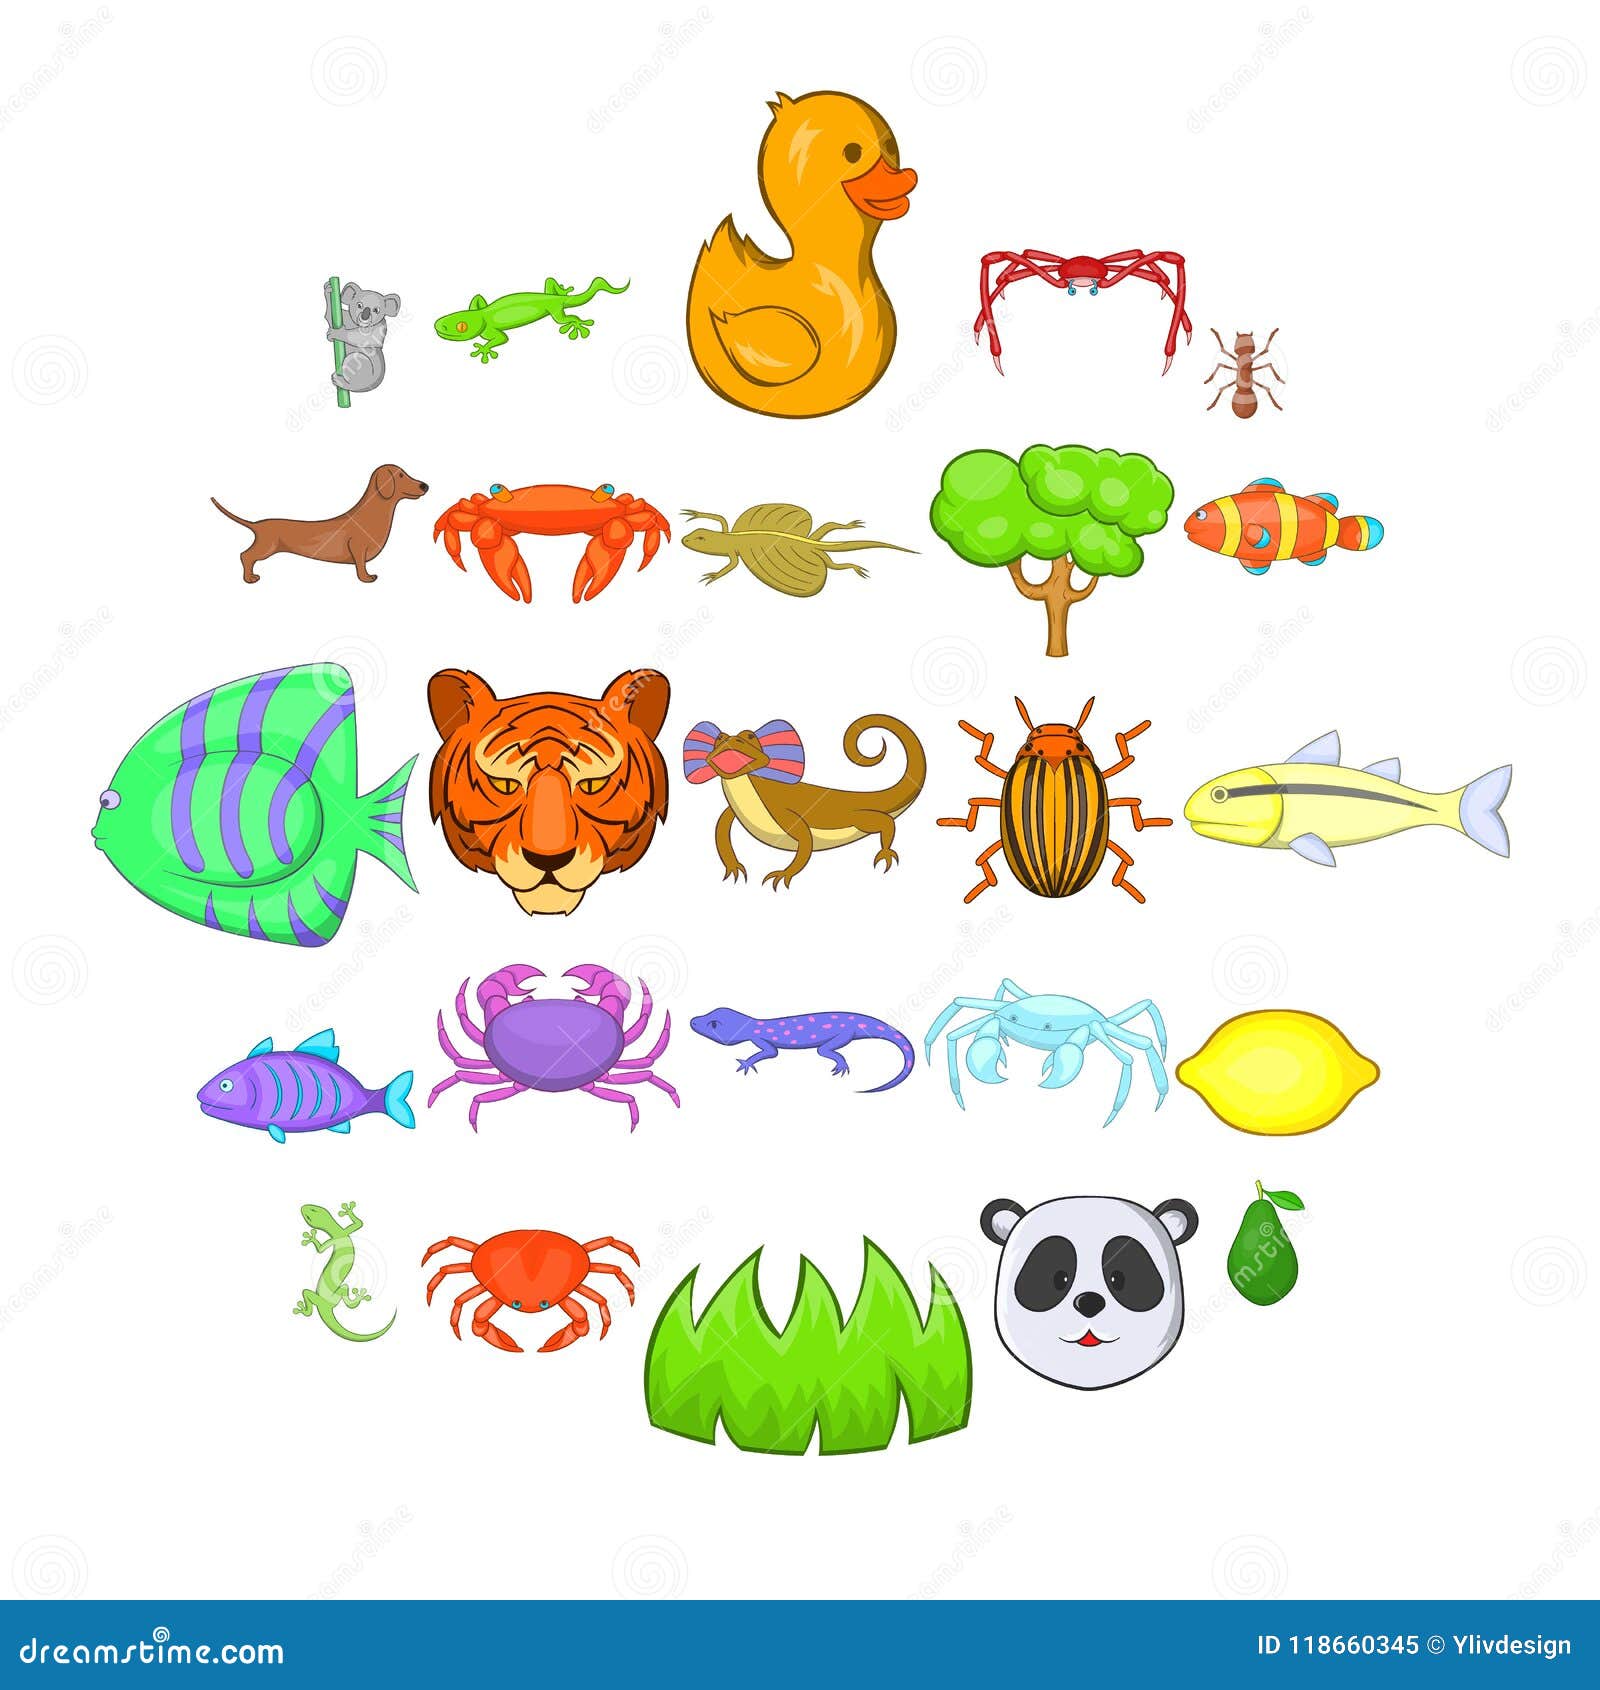 herbivores icons set, cartoon style